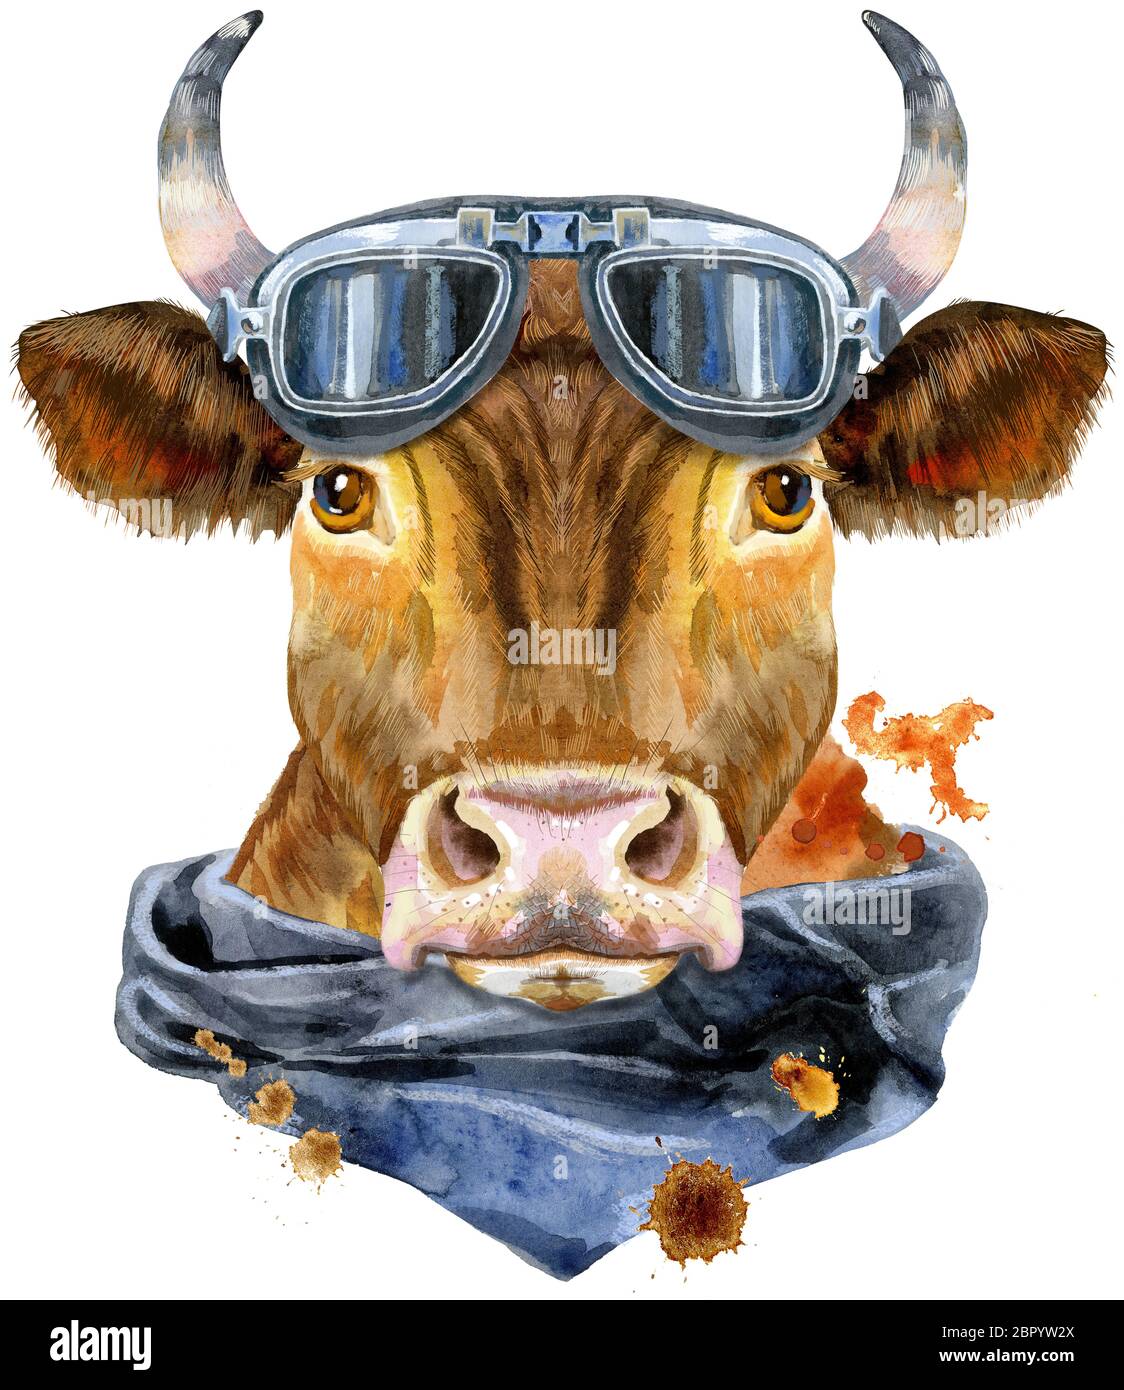 Bull Aquarell-Grafiken. Bulle mit Biker Sonnenbrille und Taschentuch Tier Illustration mit Spritzwasser-Farbe texturierten Hintergrund. Stockfoto